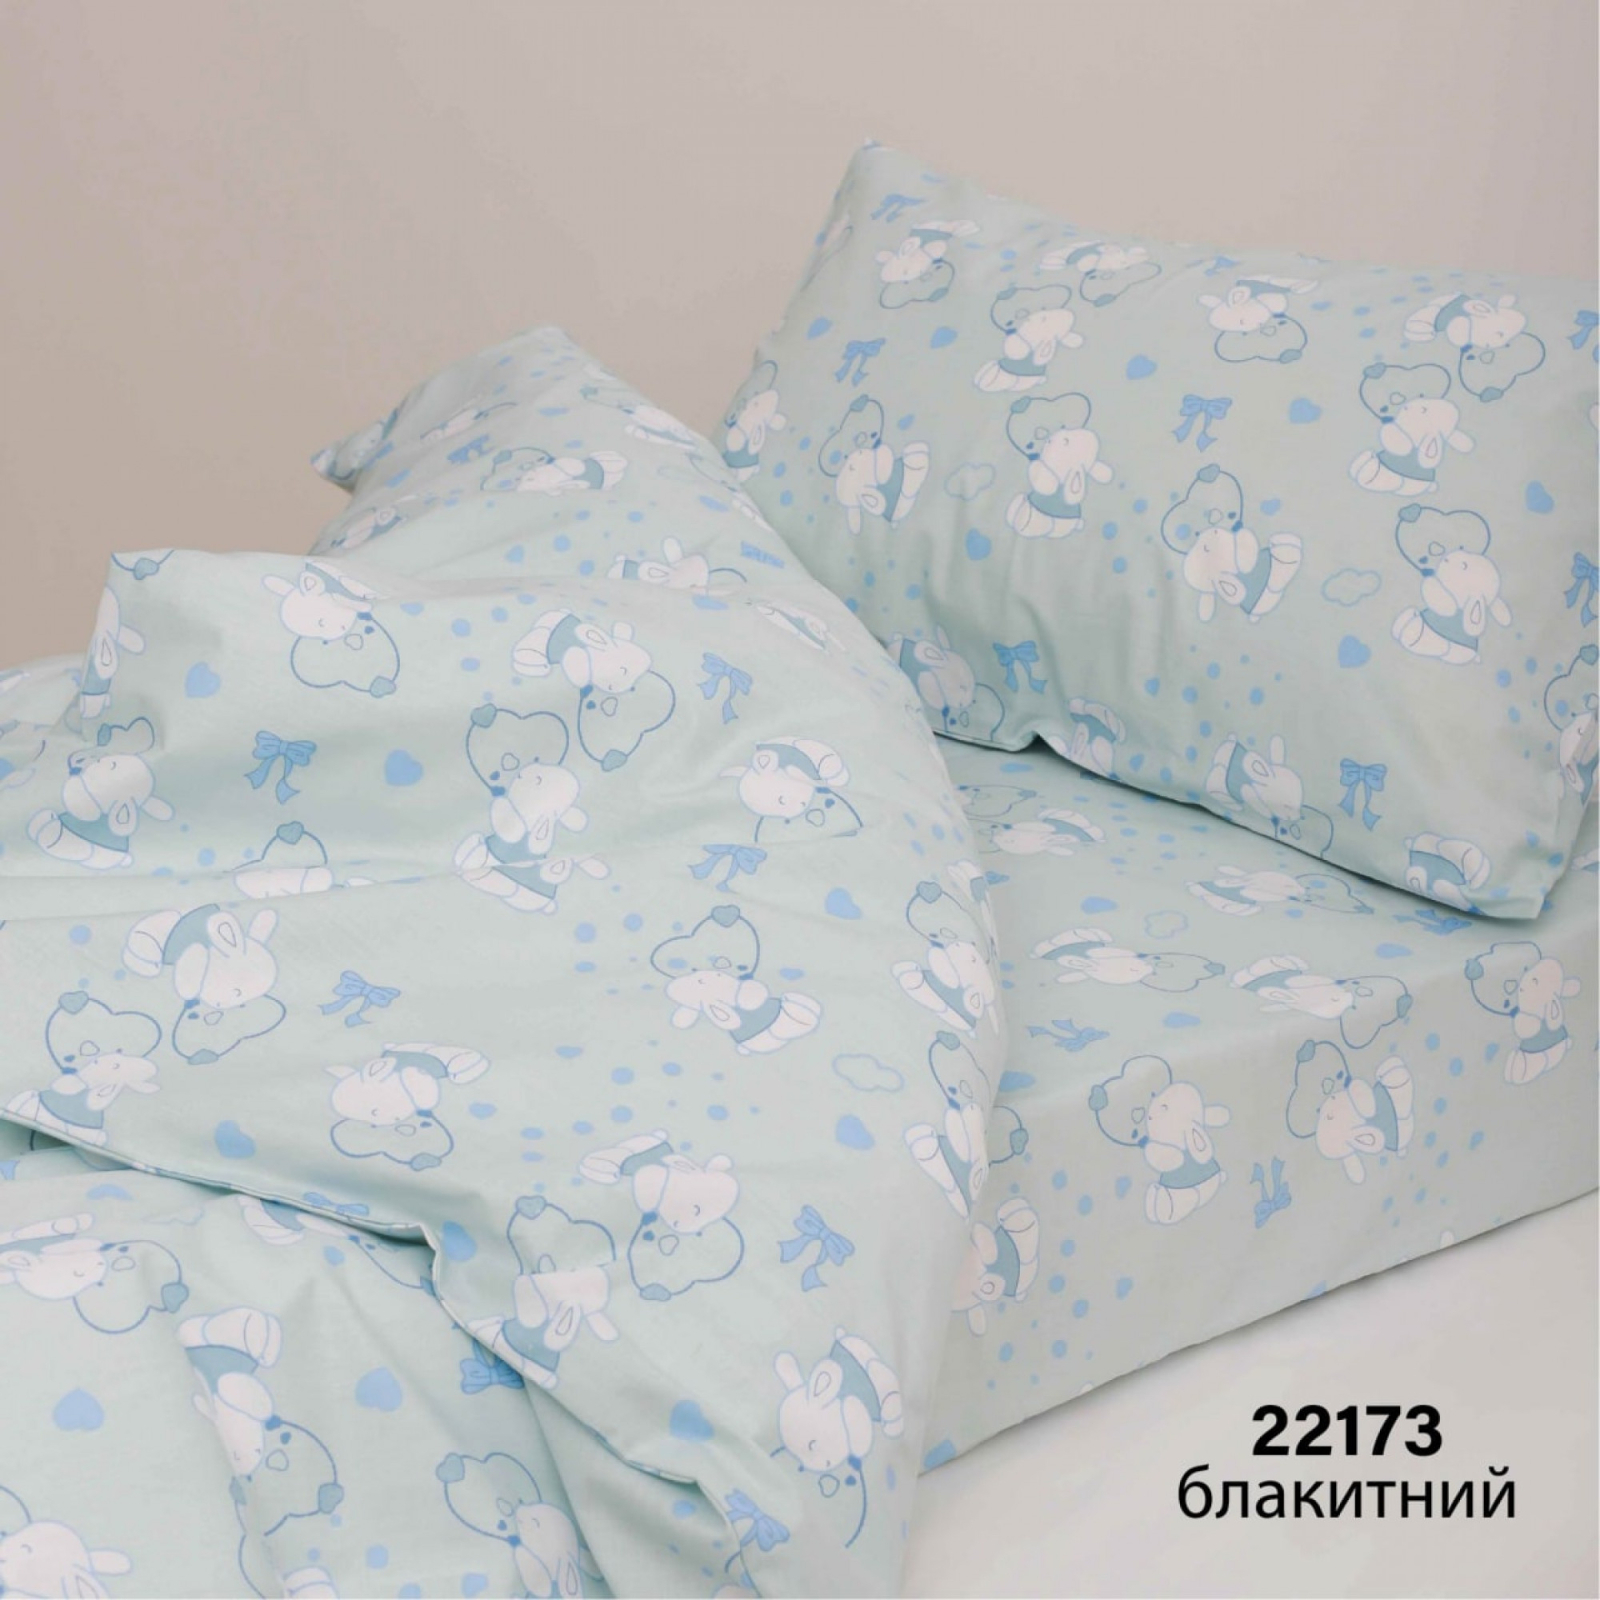 Детский постельный набор Viluta ранфорс 22173 голубой (22173 блакитний)